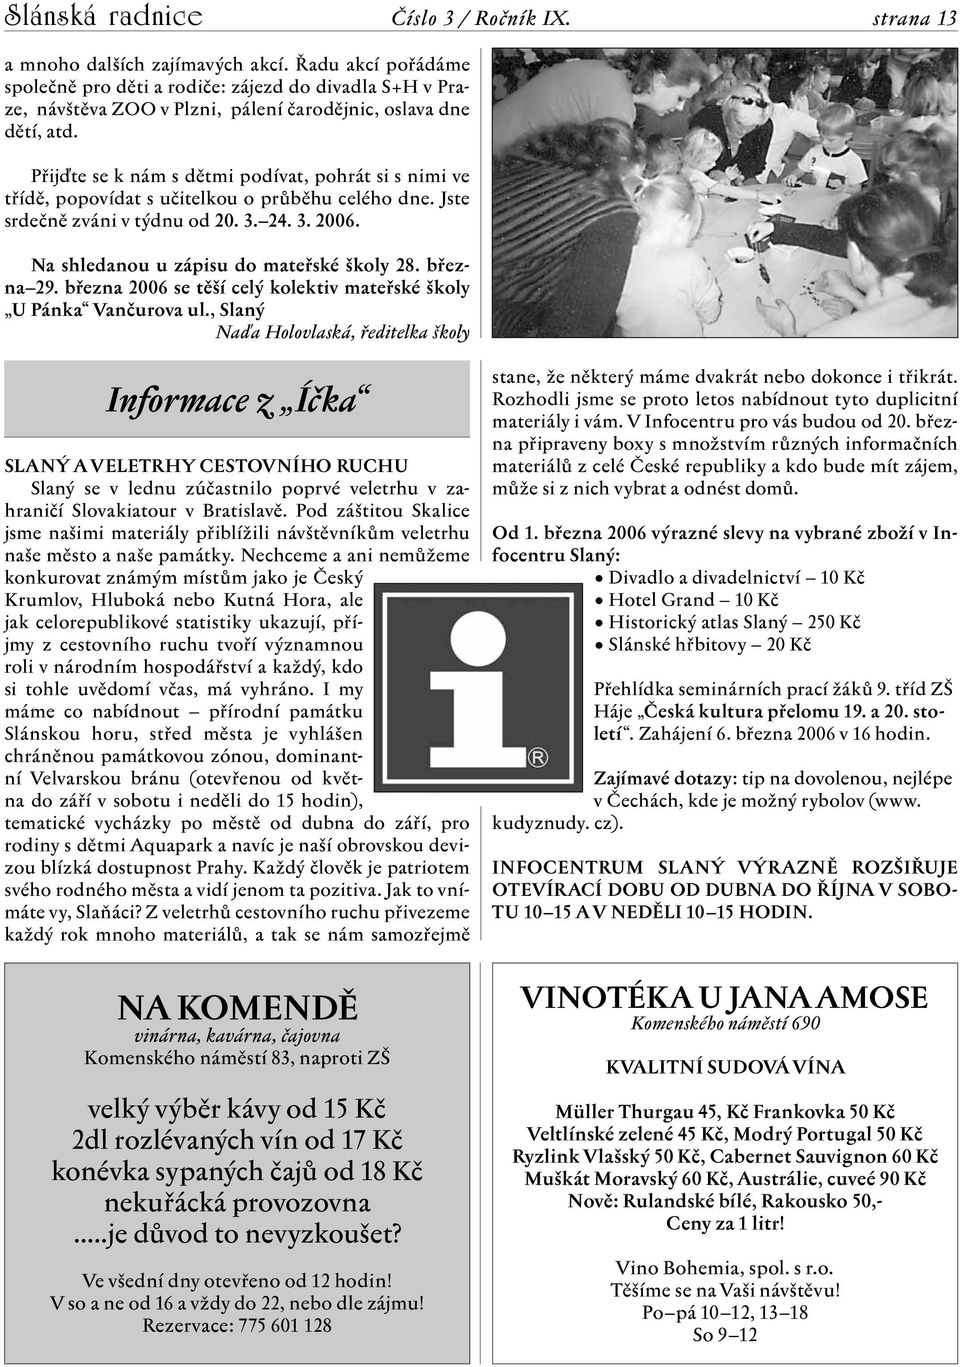 března 29. března 2006 se těší celý kolektiv mateřské školy U Pánka Vančurova ul.